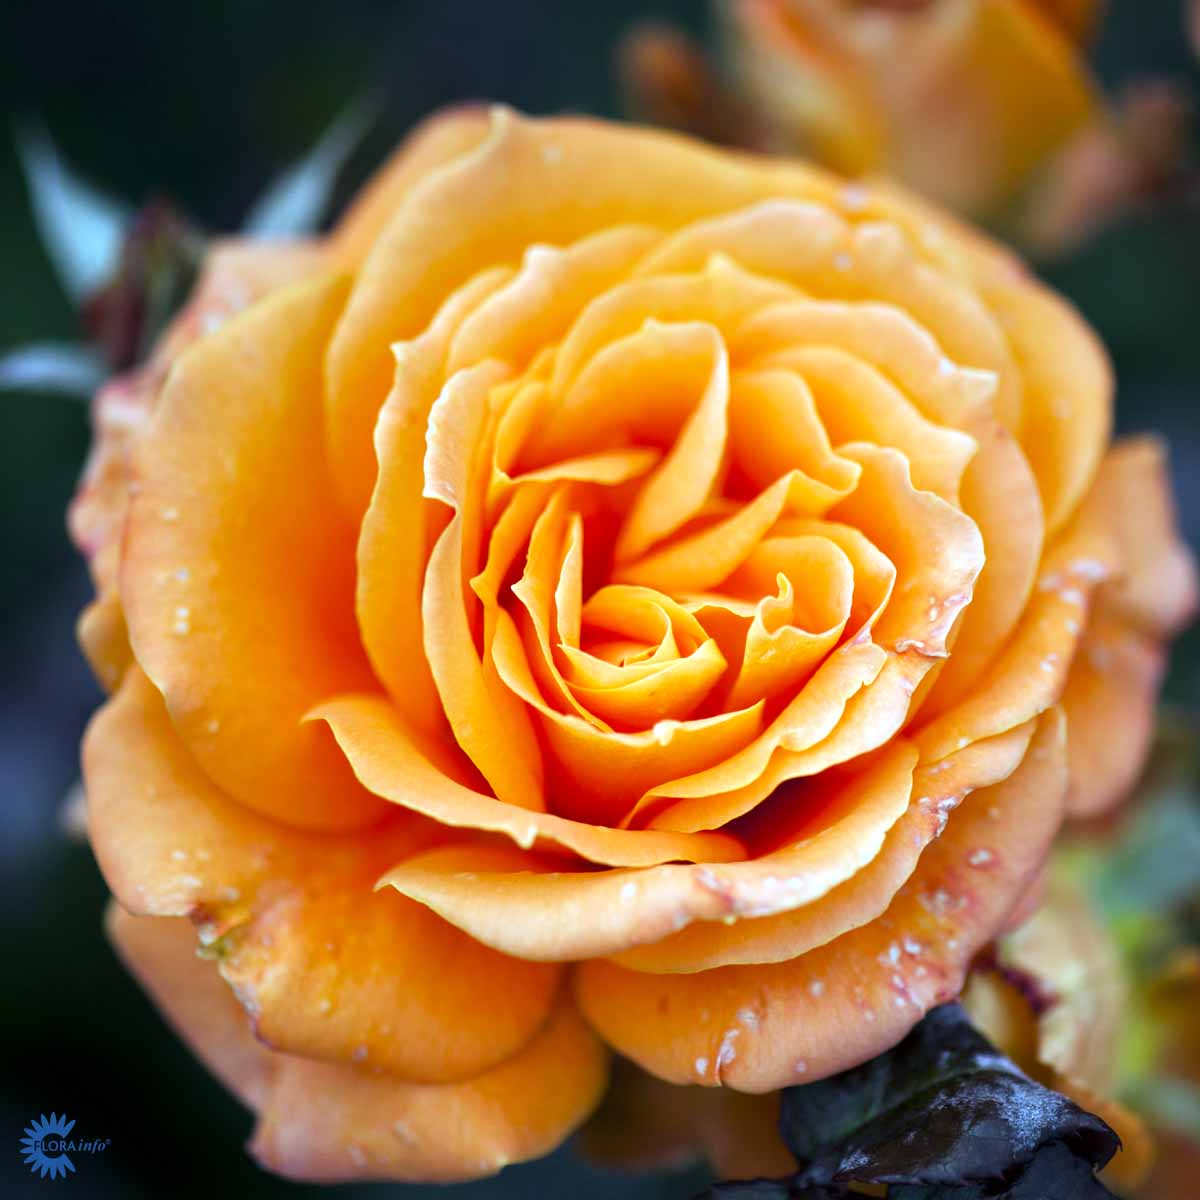 Storblomstret rose med flotte orange laks blomster. Flora Danica Rose